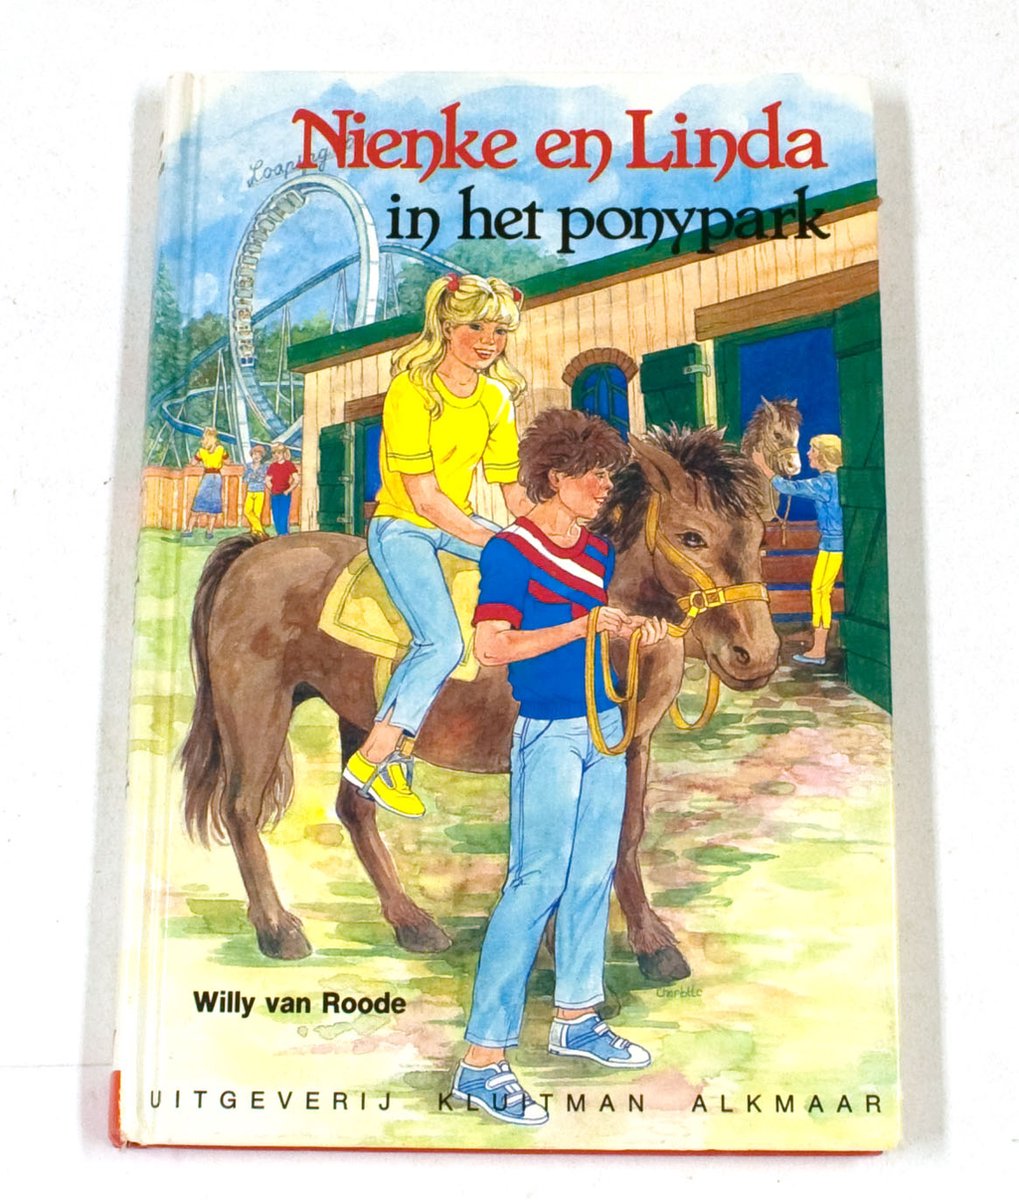 Nienke en Linda in het ponypark